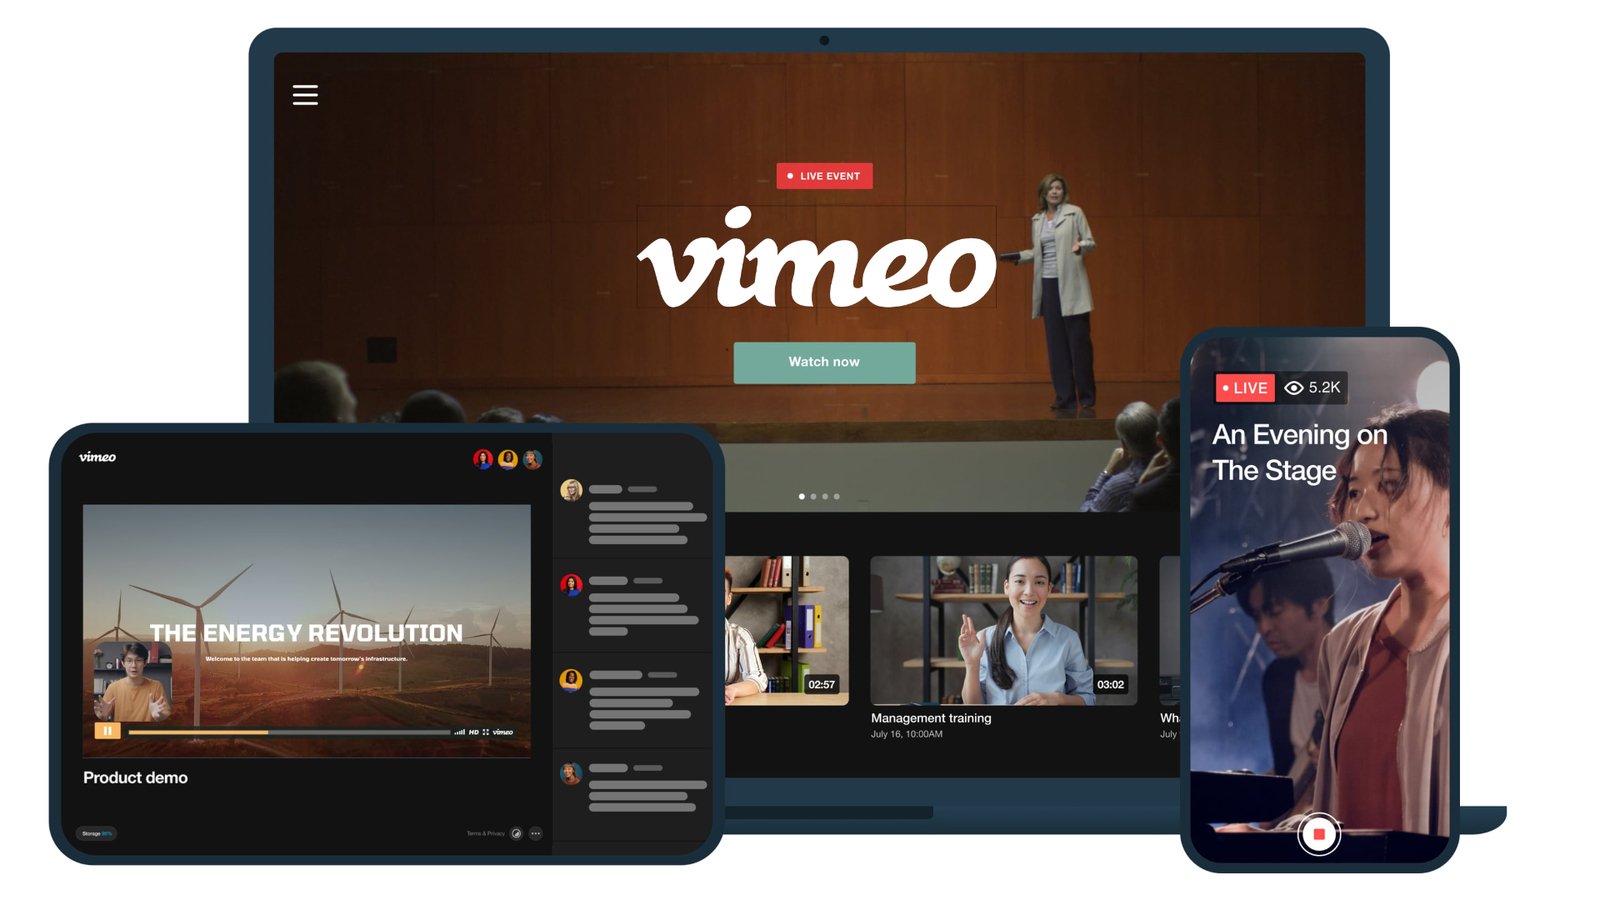 Vimeo, TV Uygulamalarını Sonlandırma Kararı Aldı
